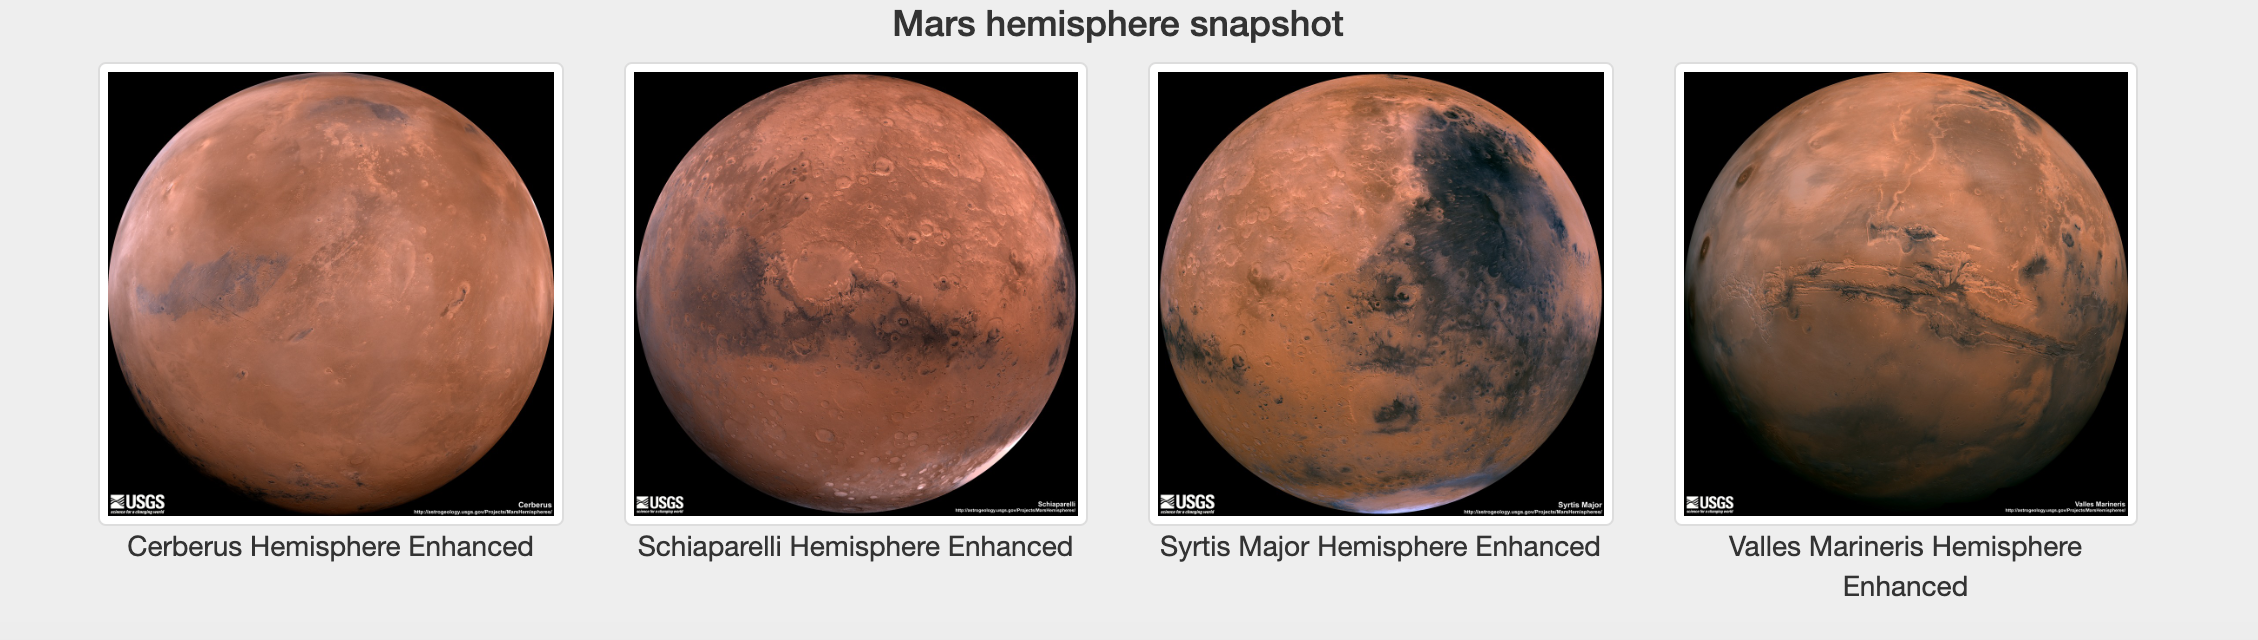 Mars hemisphere